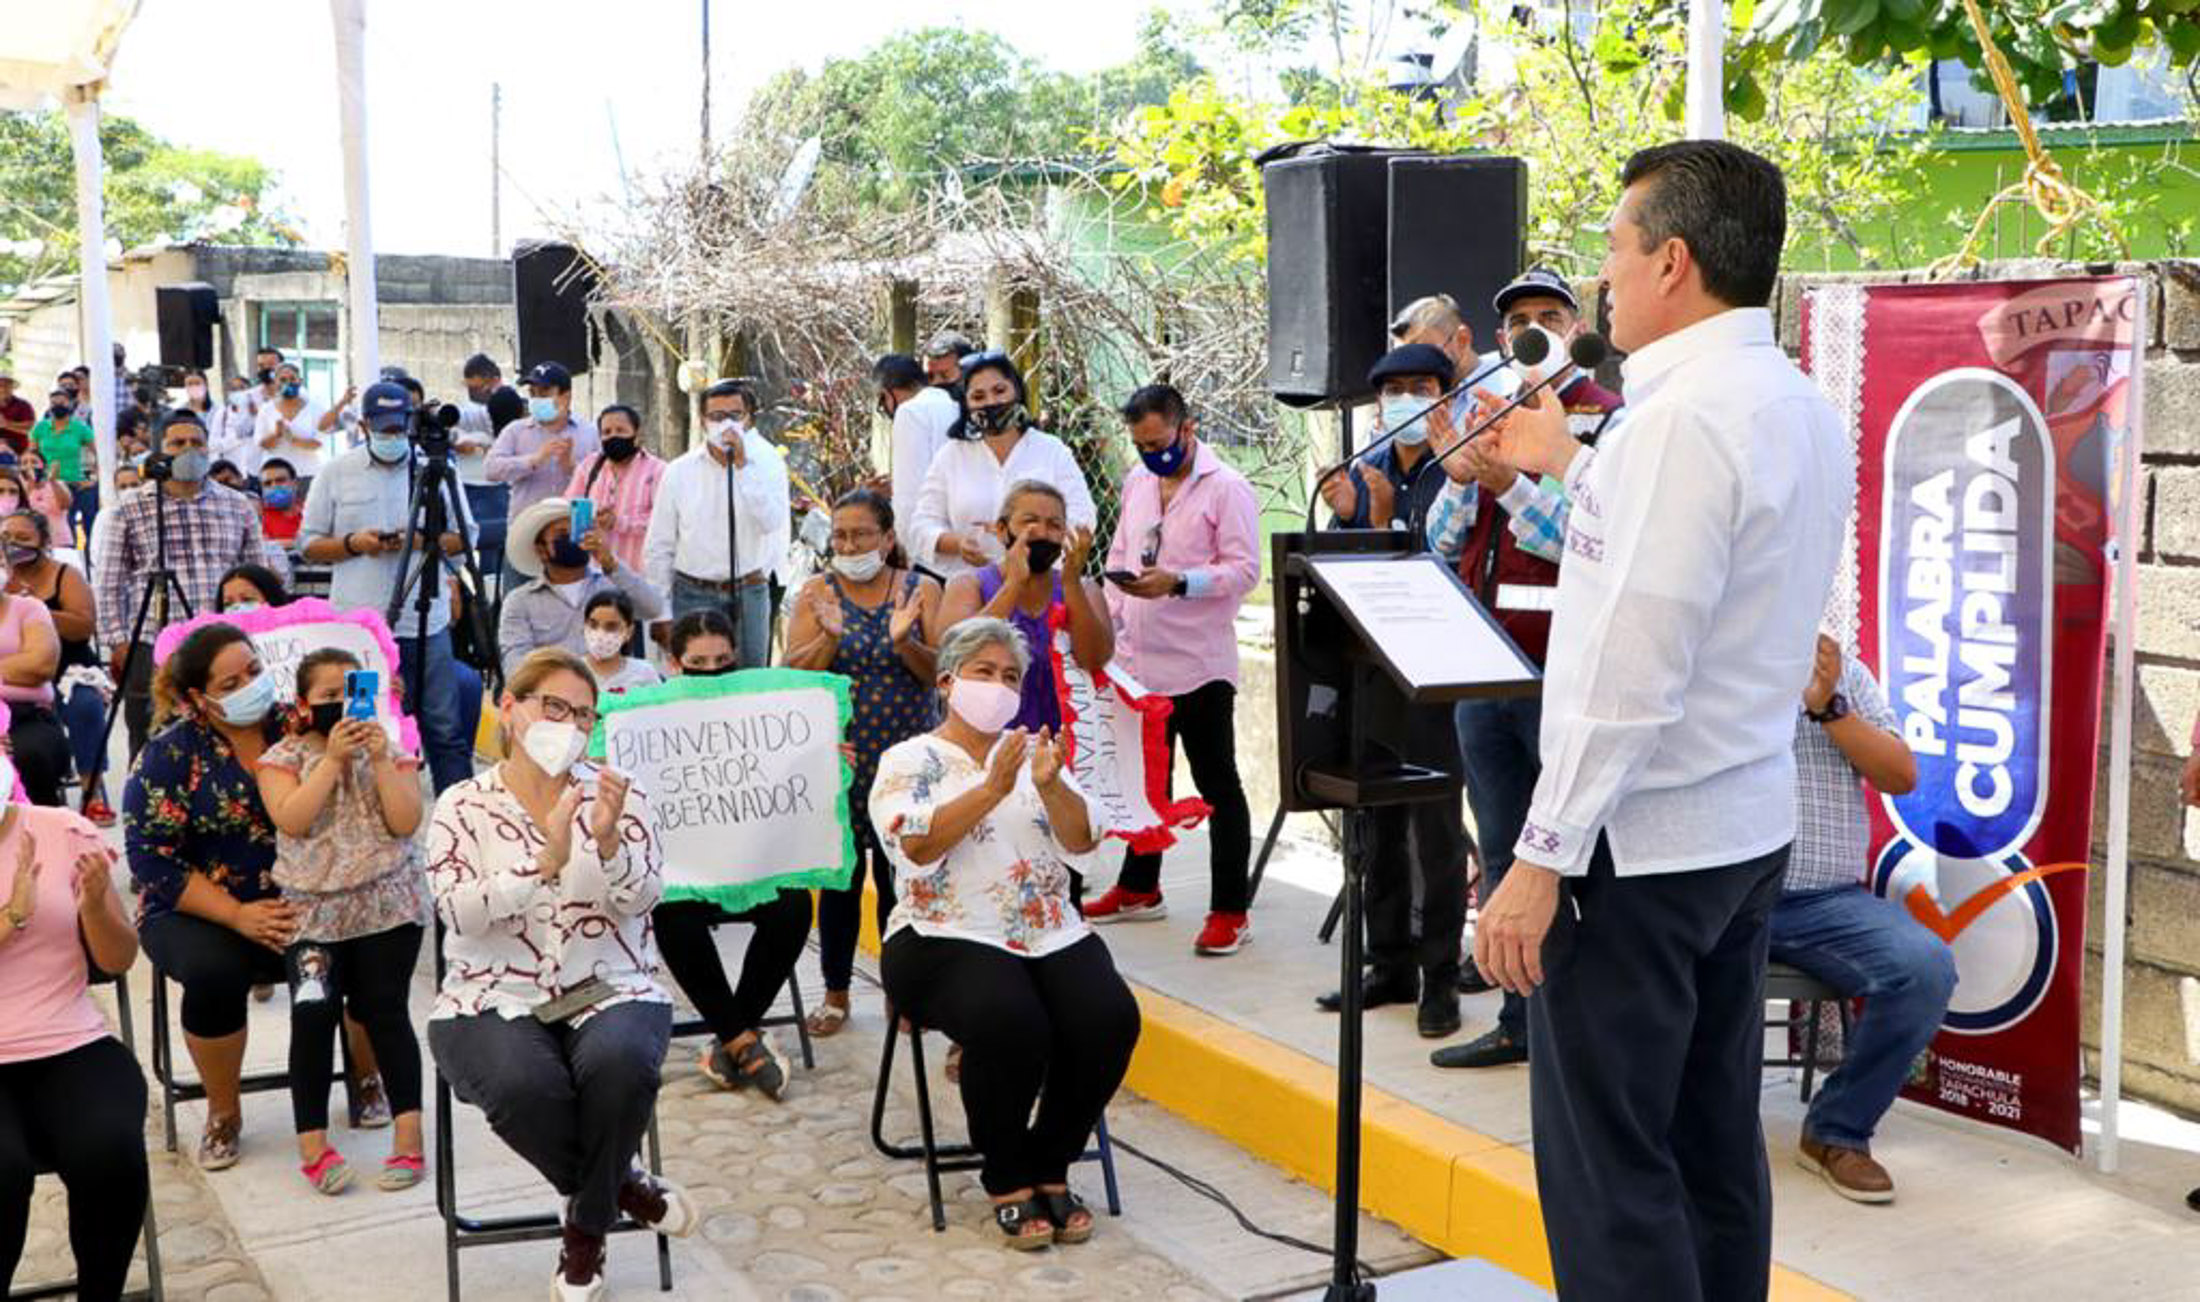 Presupuesto público se invierte para garantizar el bien común y brindar justicia social: gobernador de Chiapas